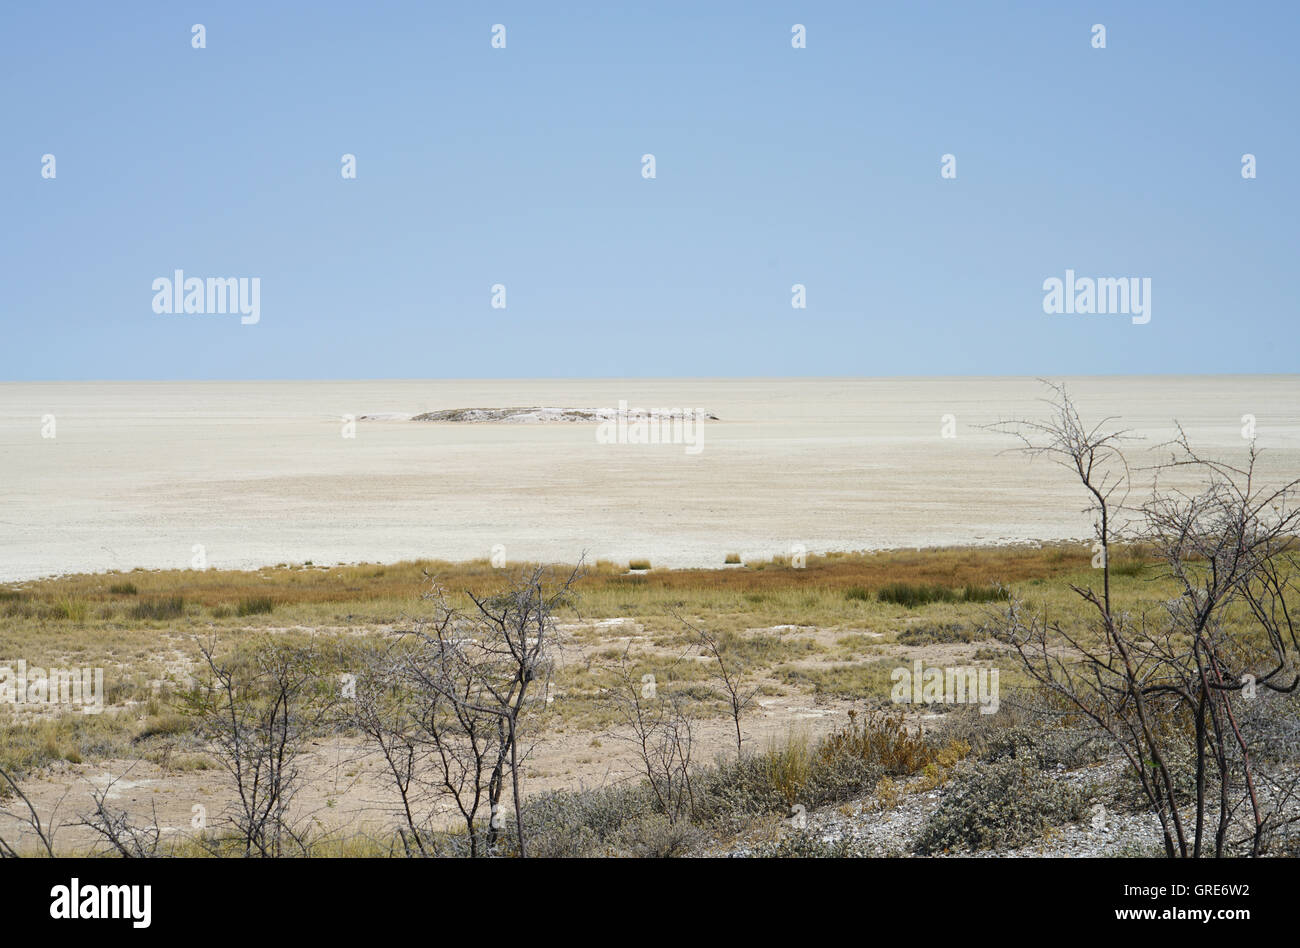 Dryness In The Etosha Pan, Namibia Stock Photo